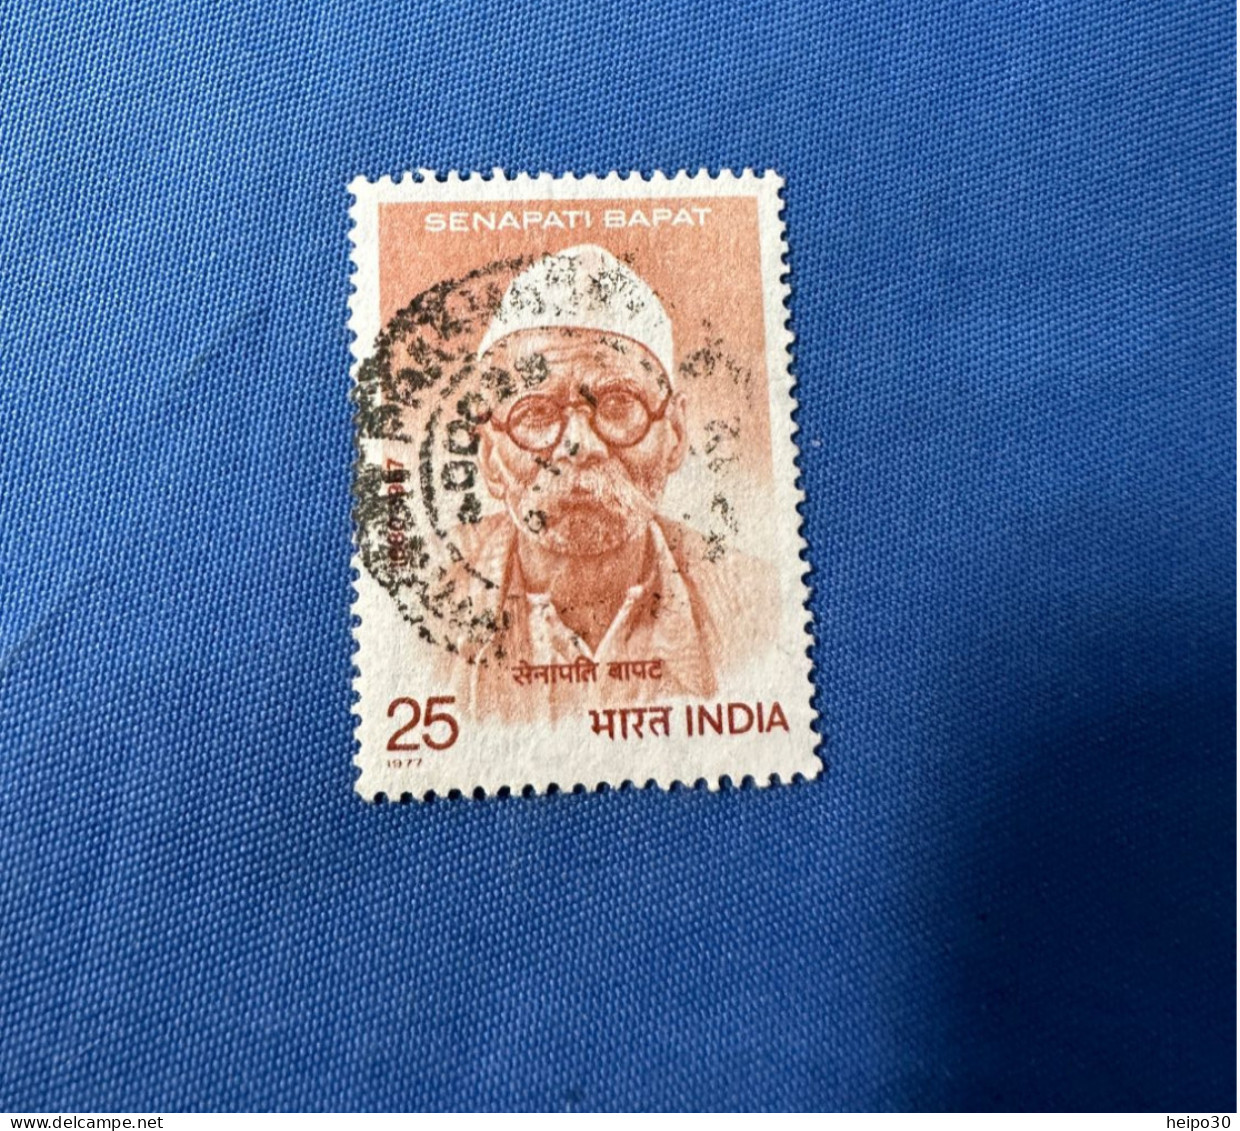 India 1977 Michel 743 Senapati Bapat - Usati